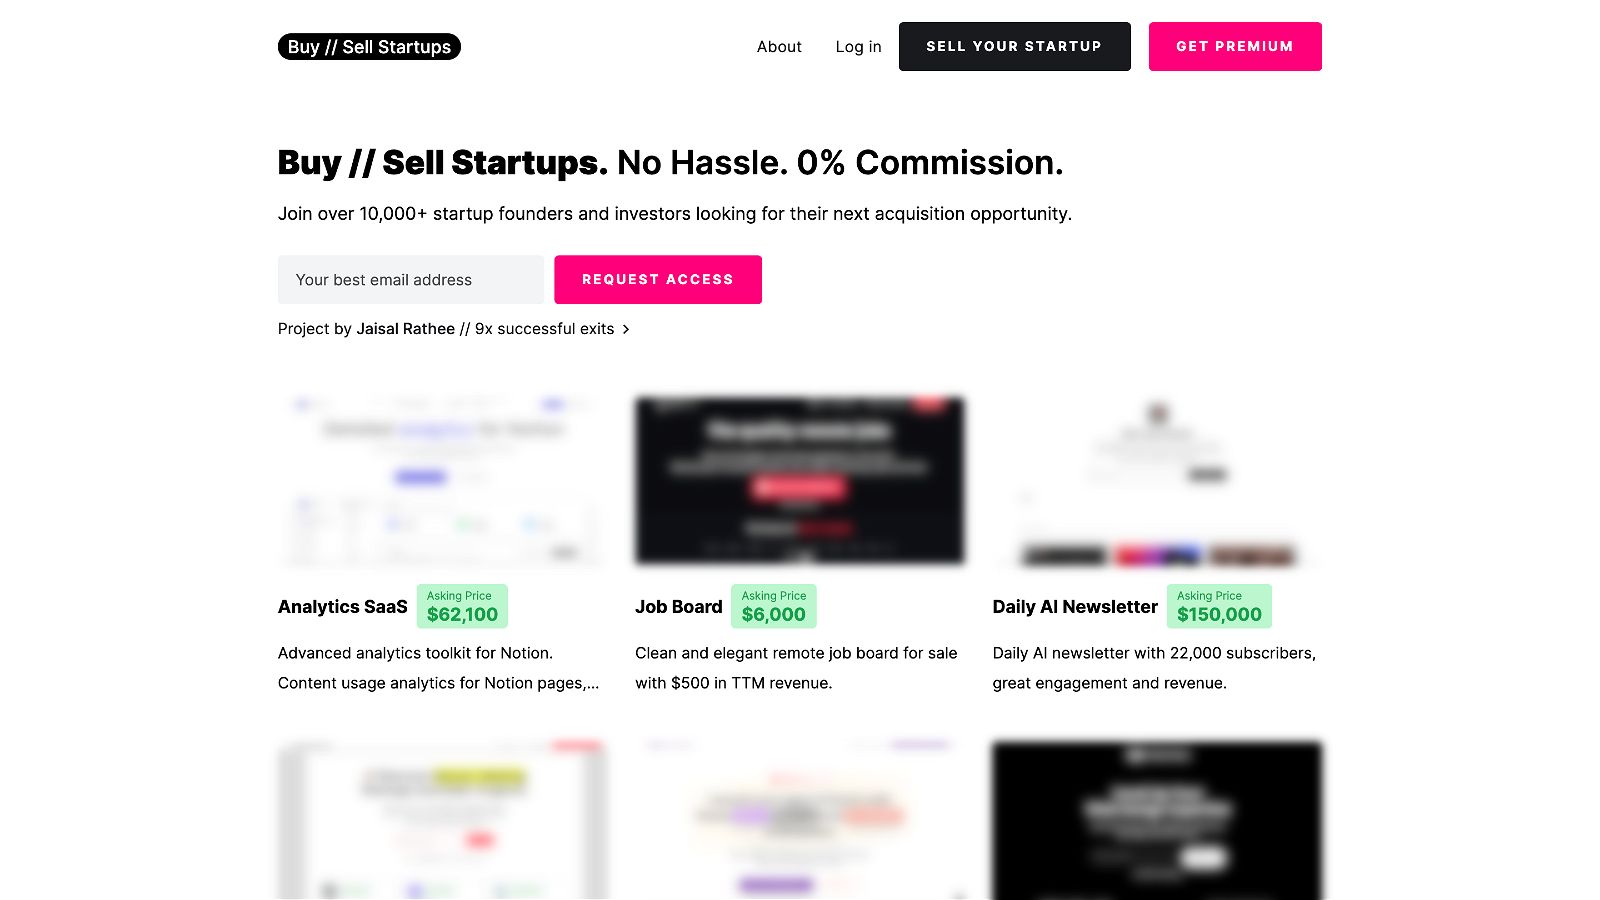 Buy Sell Startups teaser